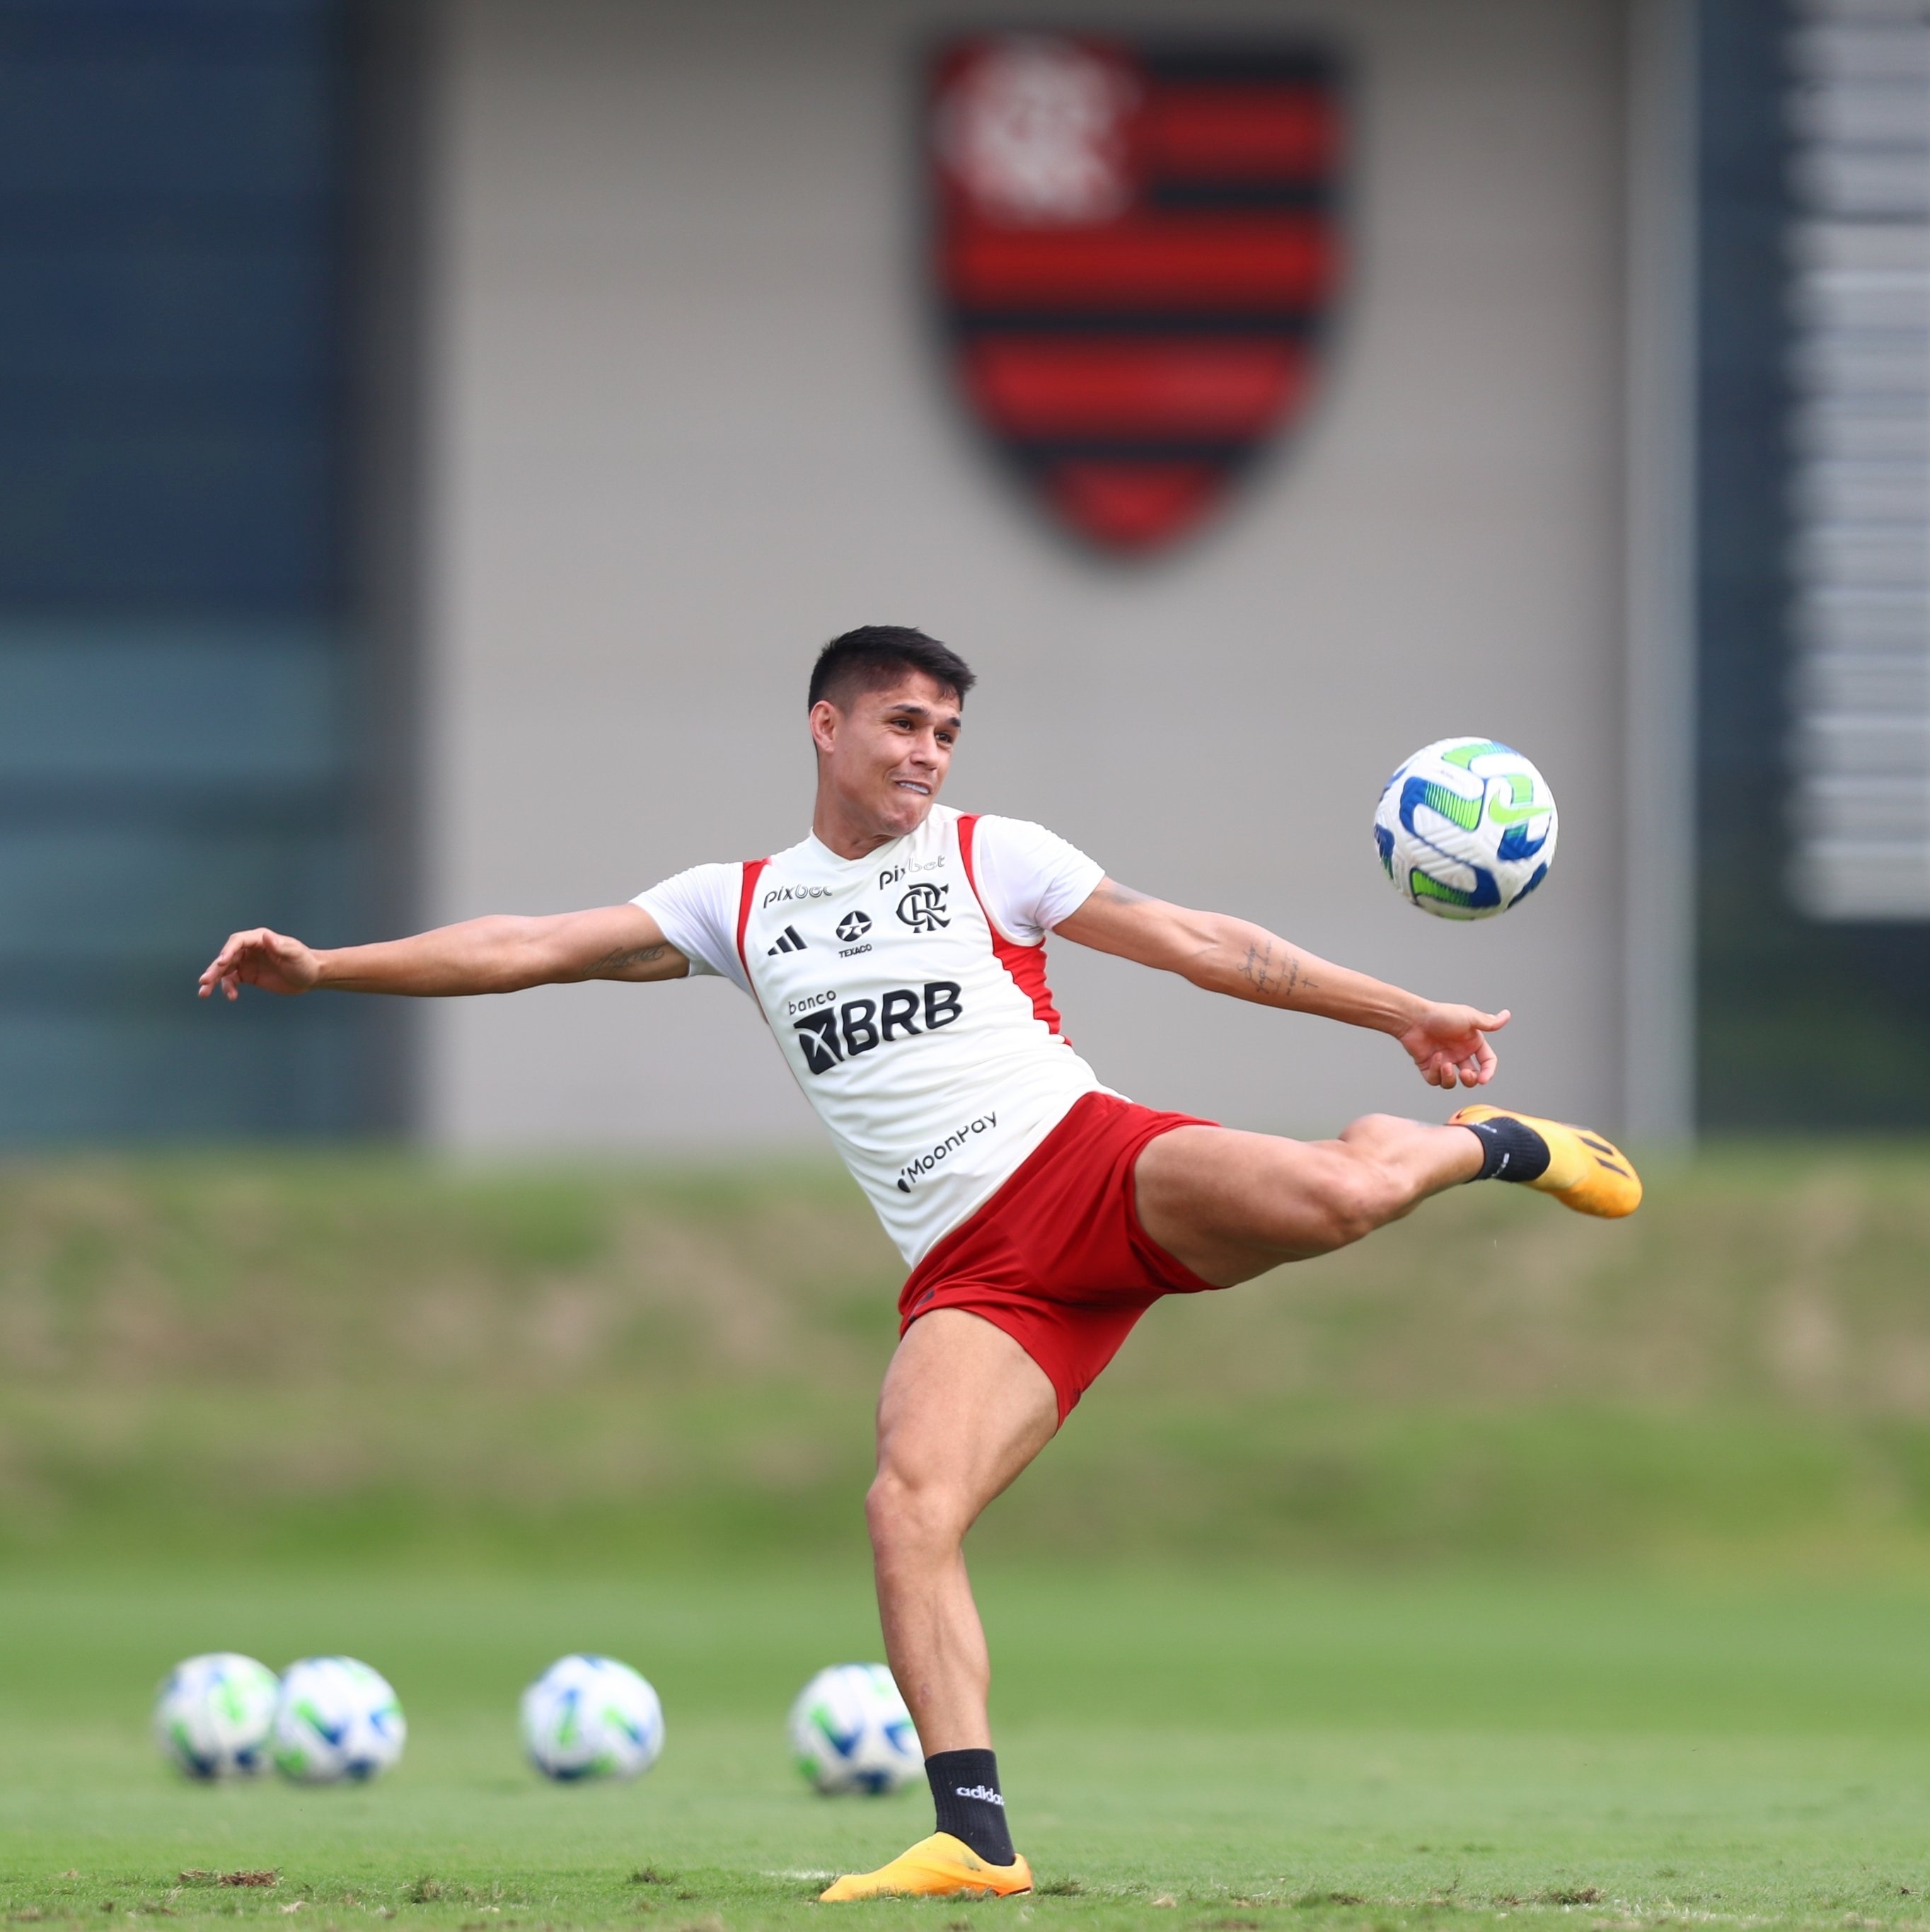 Luiz Araújo é novo reforço do Flamengo; veja detalhes do negócio